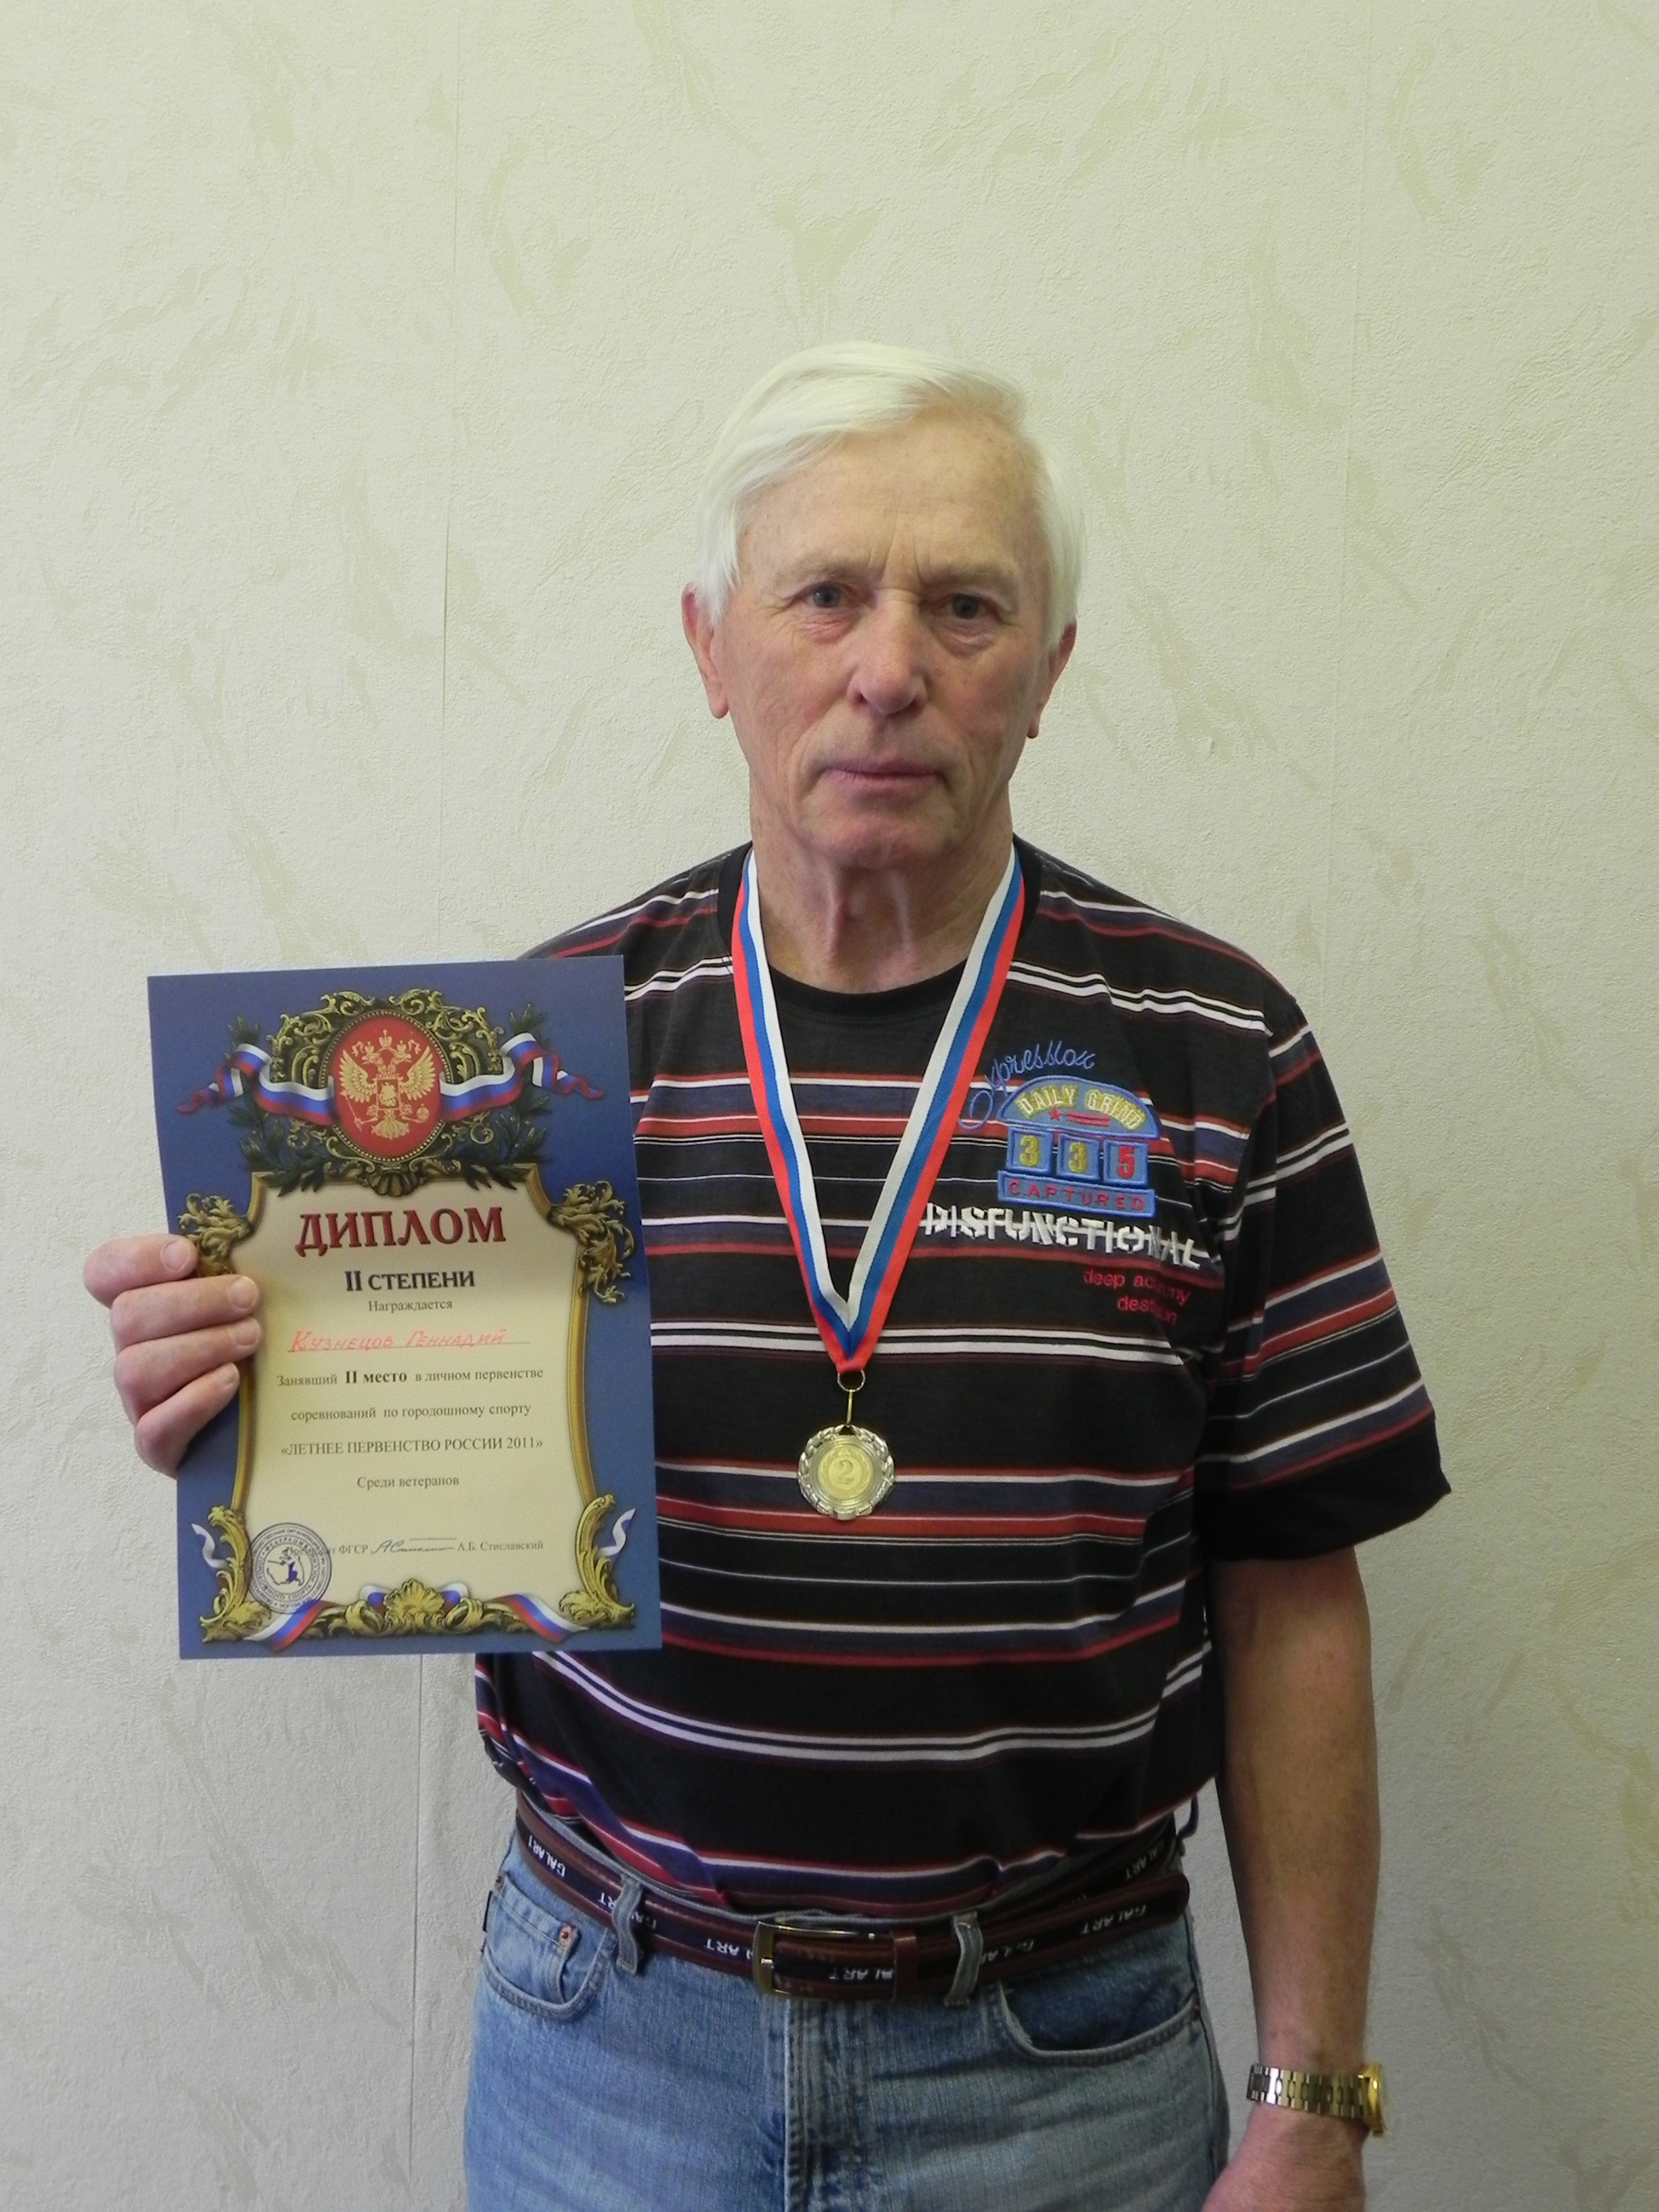 14:53 Геннадий Кузнецов свою серебряную медаль в первенстве России по городошному спорту посвятил любимой Чувашии